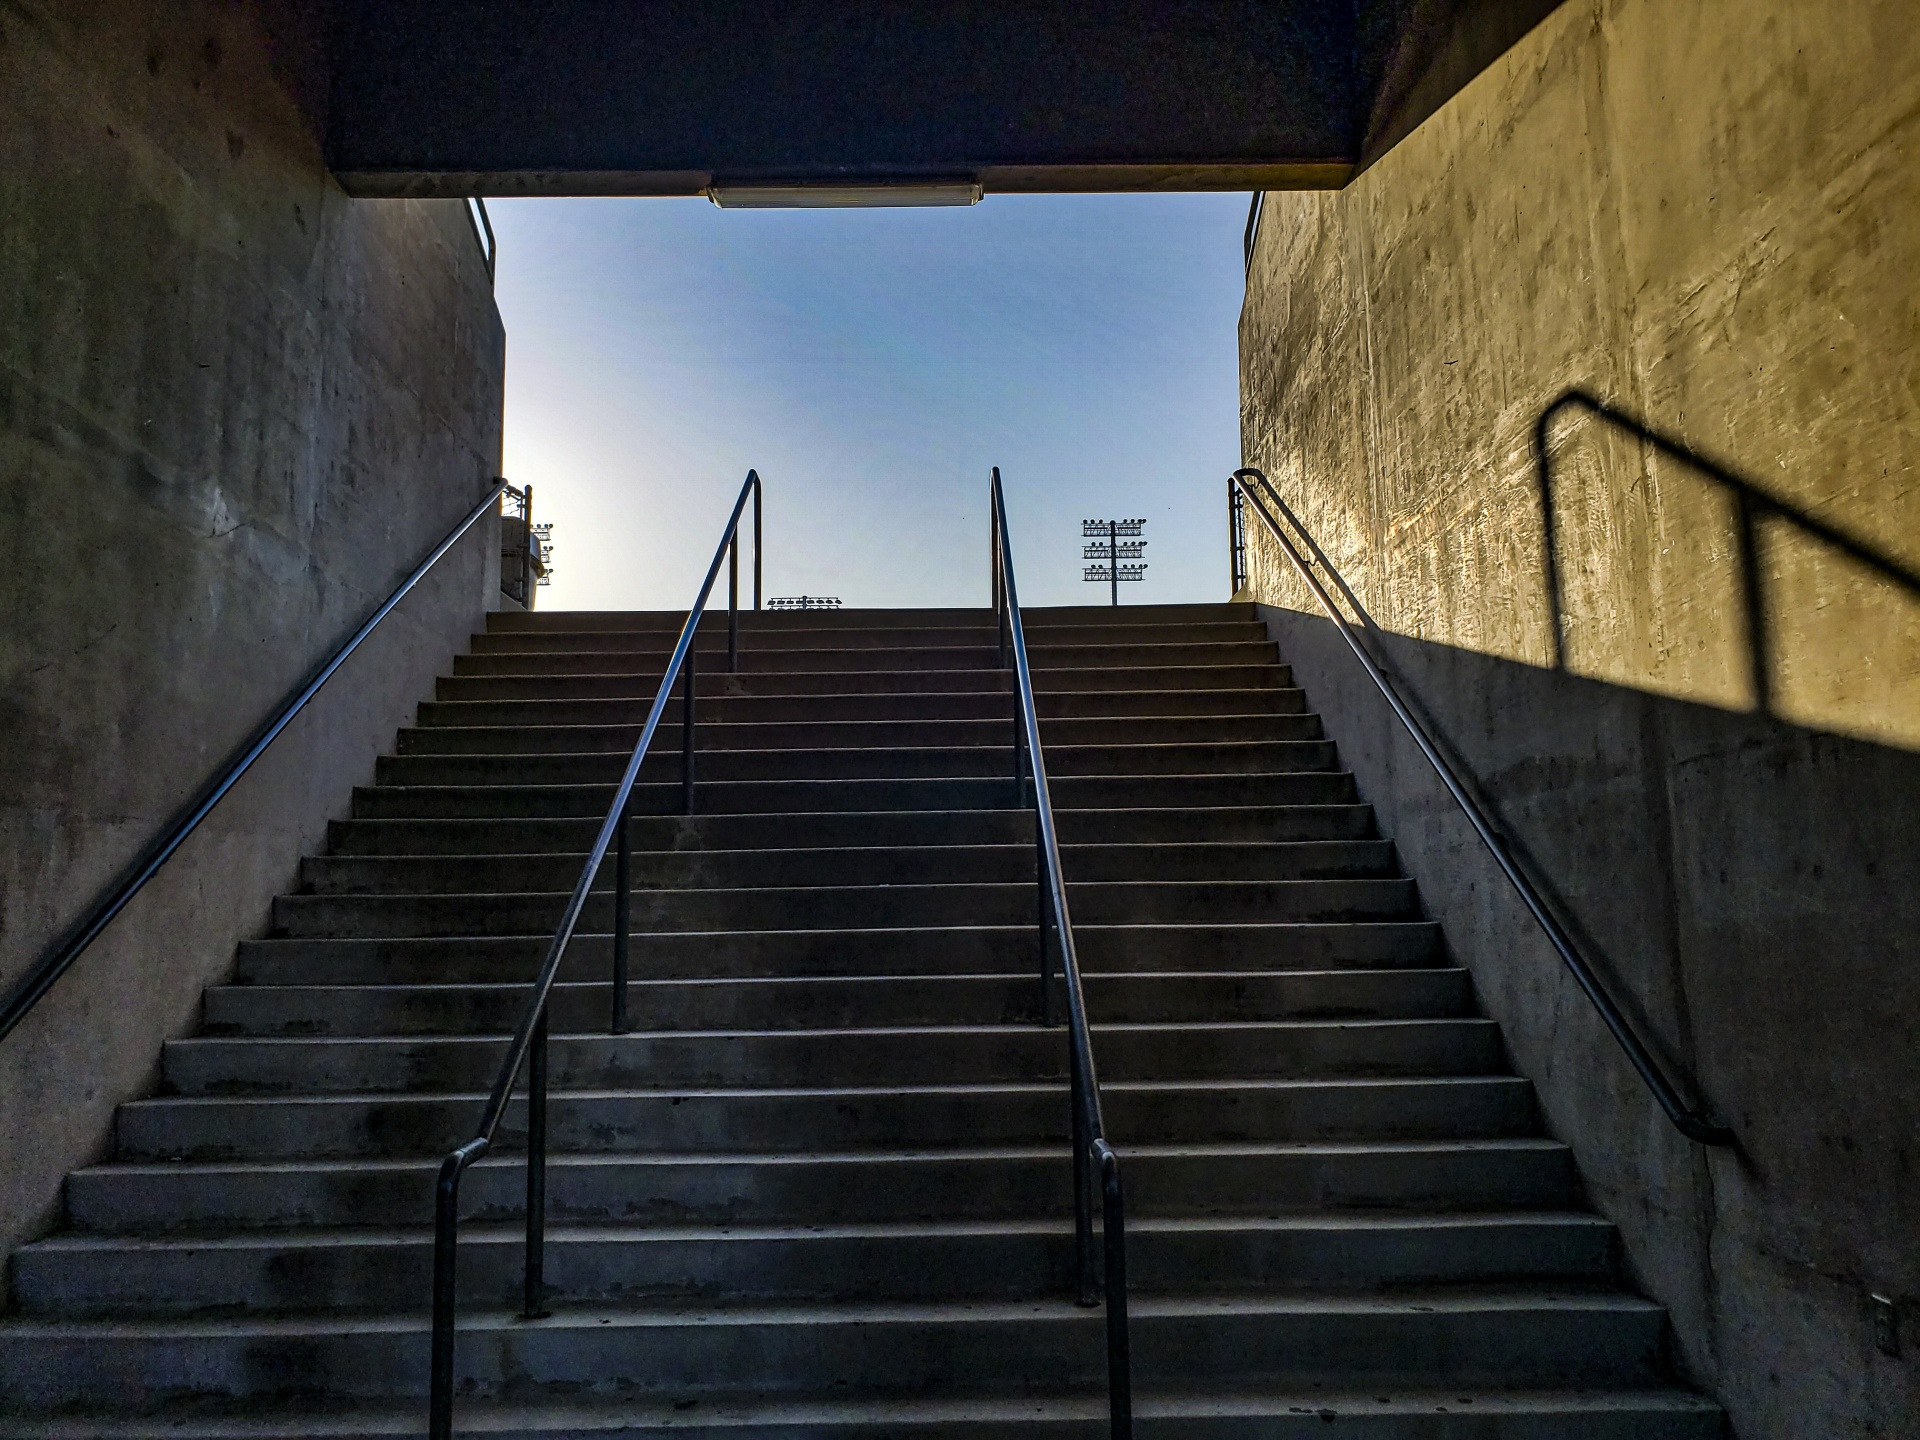 Escaleras del estadio